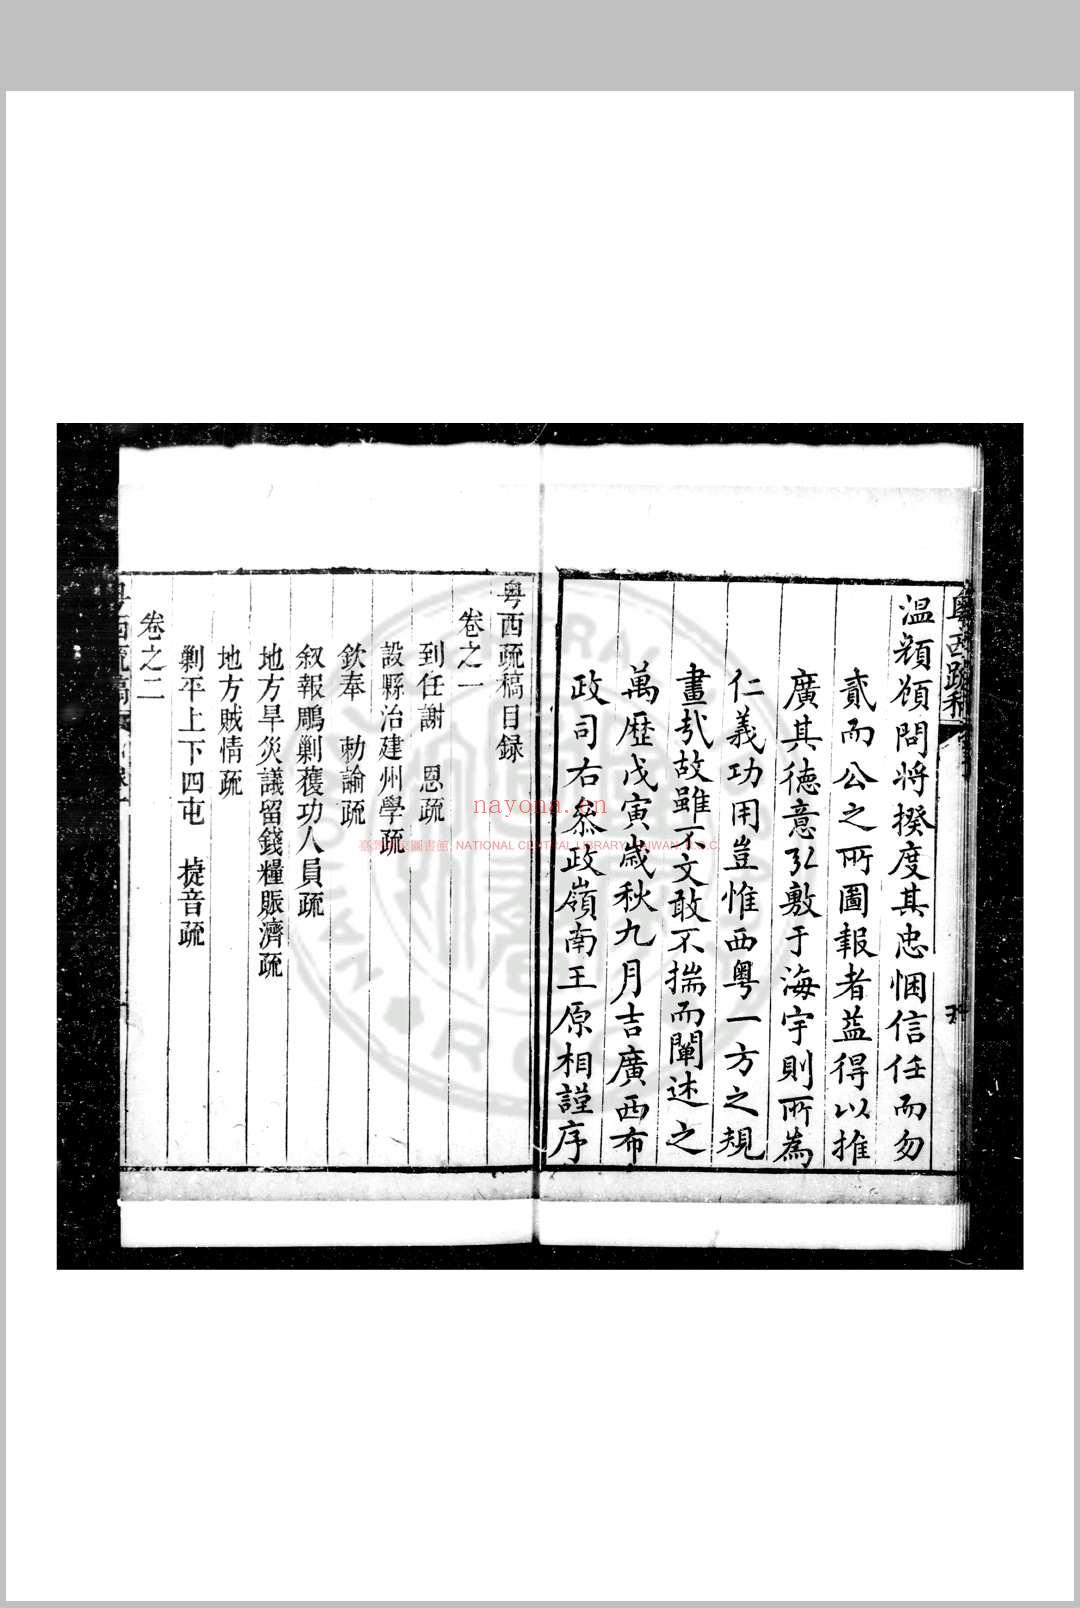 粤西疏稿 (明)吴文华撰 明万历间(1573-1620)刊清乾隆间(1736-1795)印本